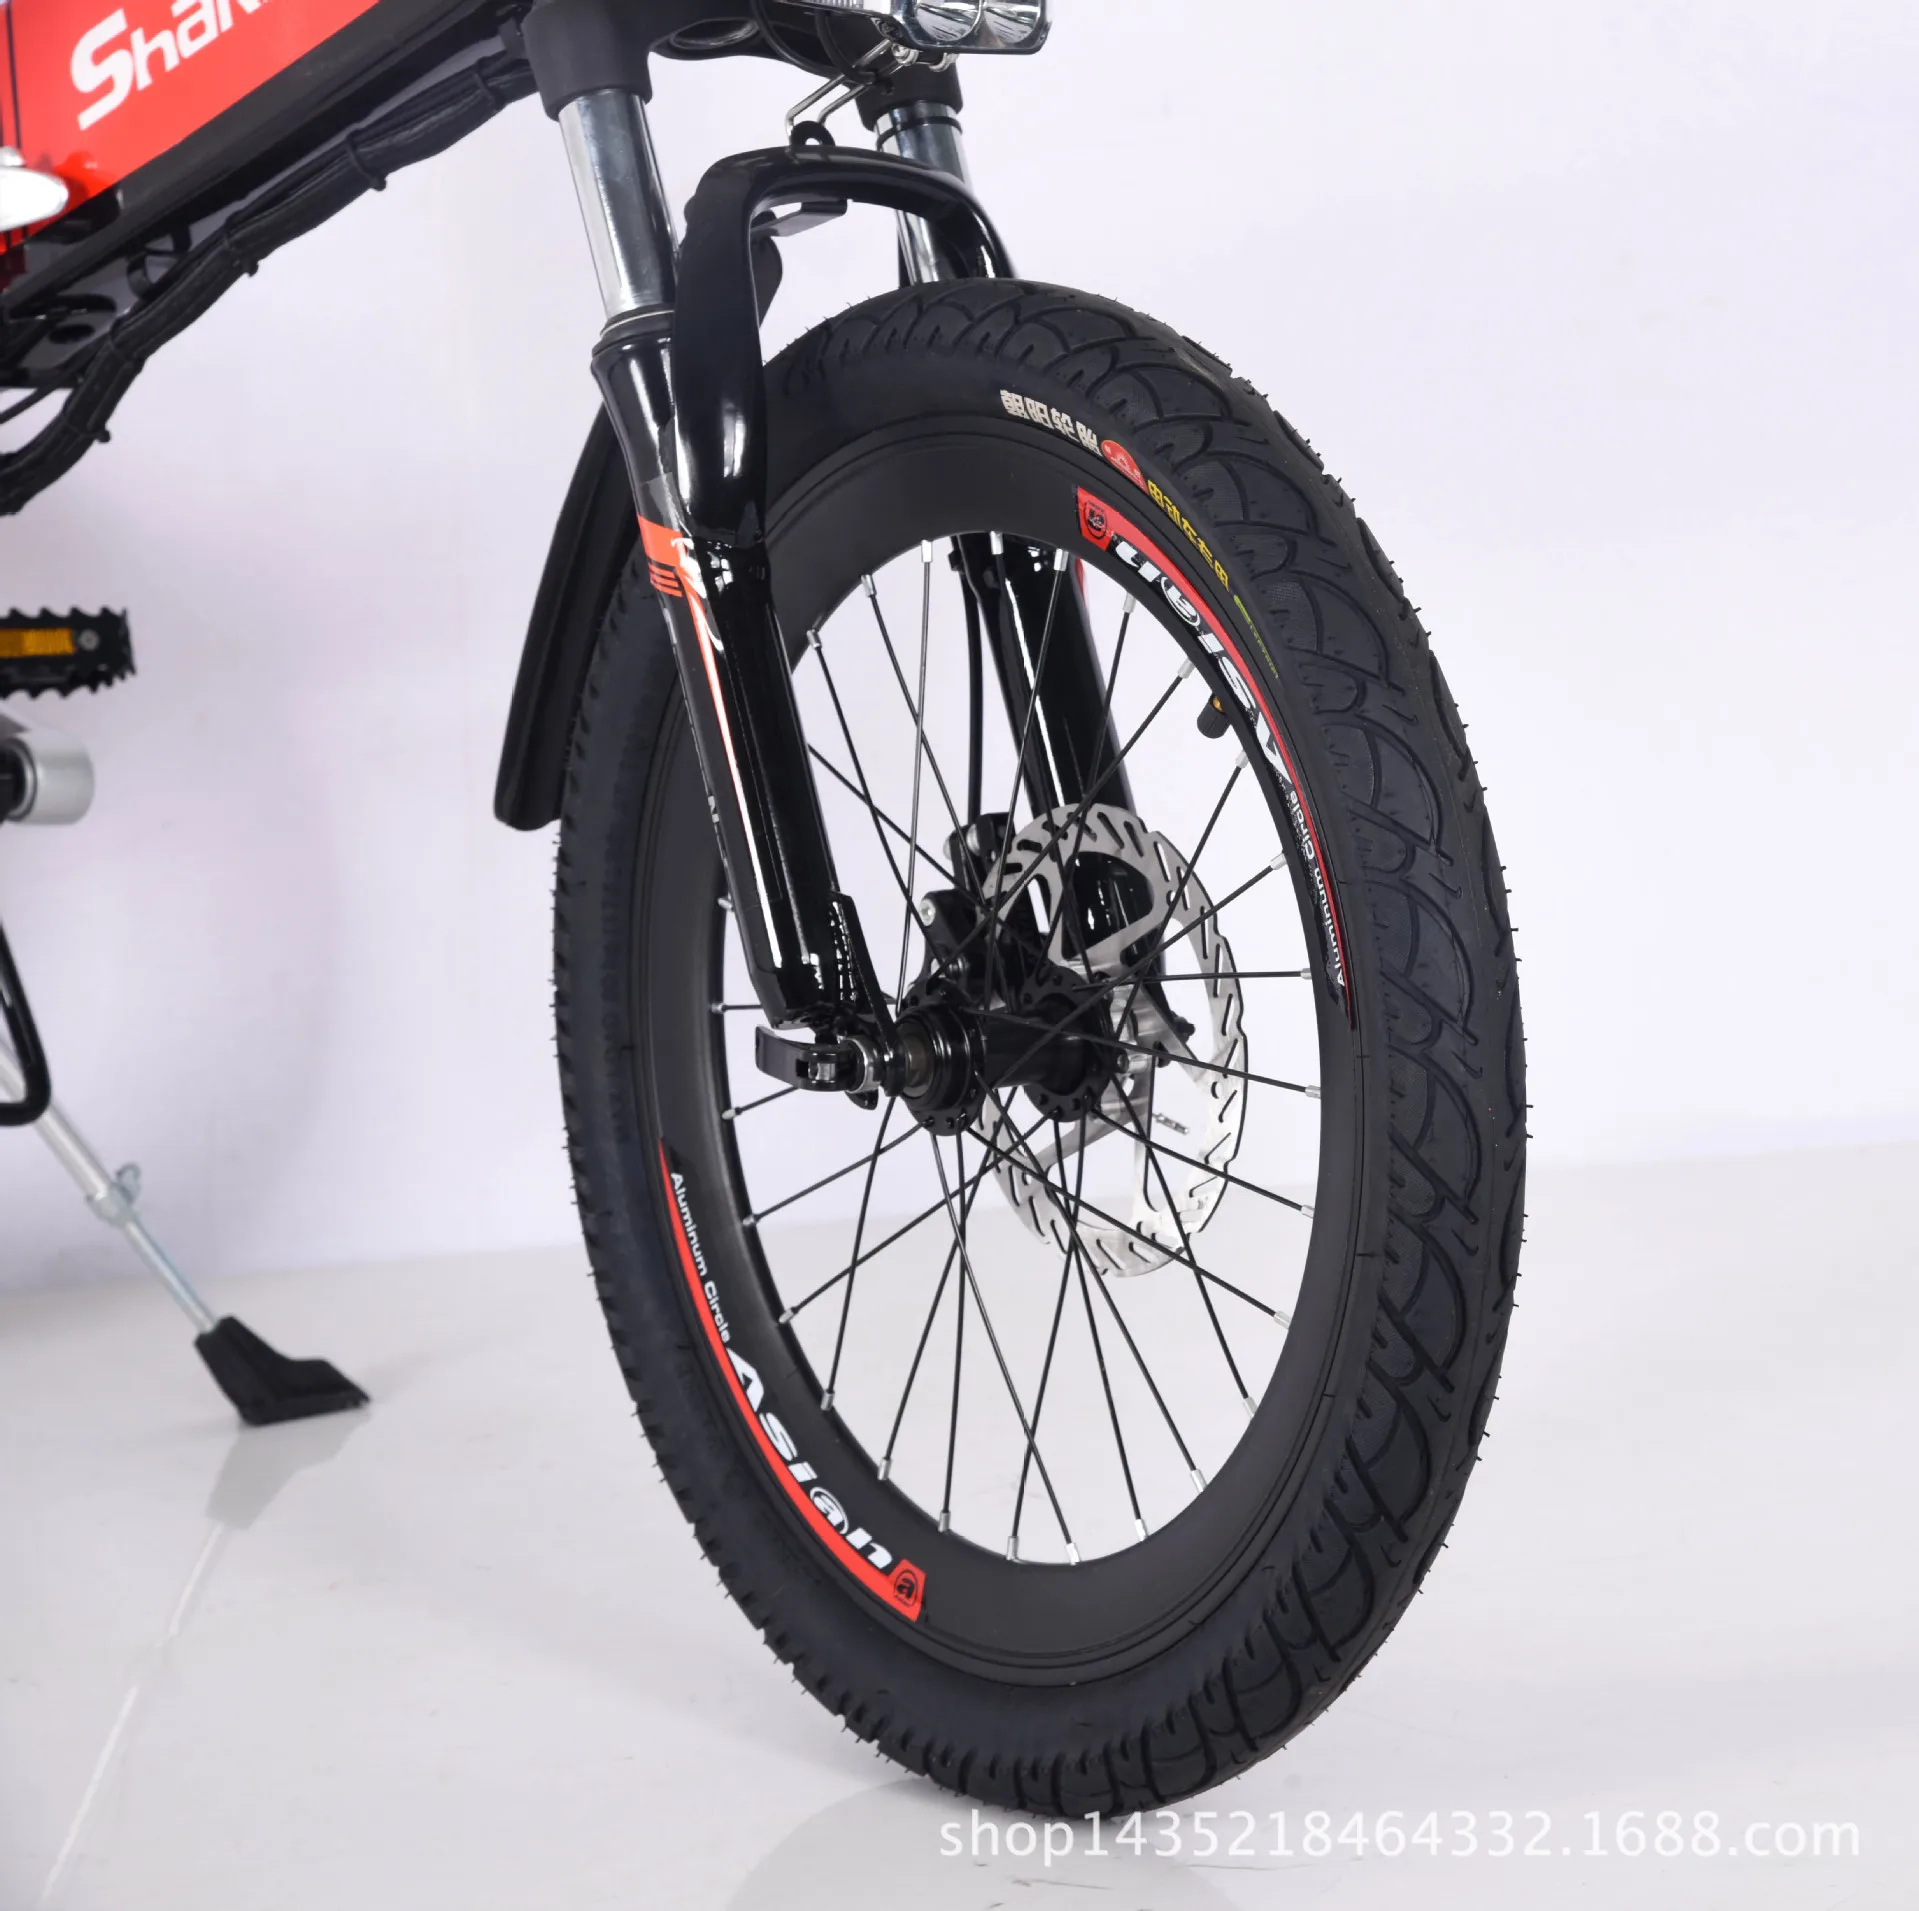 20-дюймовый Электрический велосипед электрический складной-20 дюймов складной электрический велосипед для взрослых Электрический автомобиль Bicicleta Electrica Rockwheel